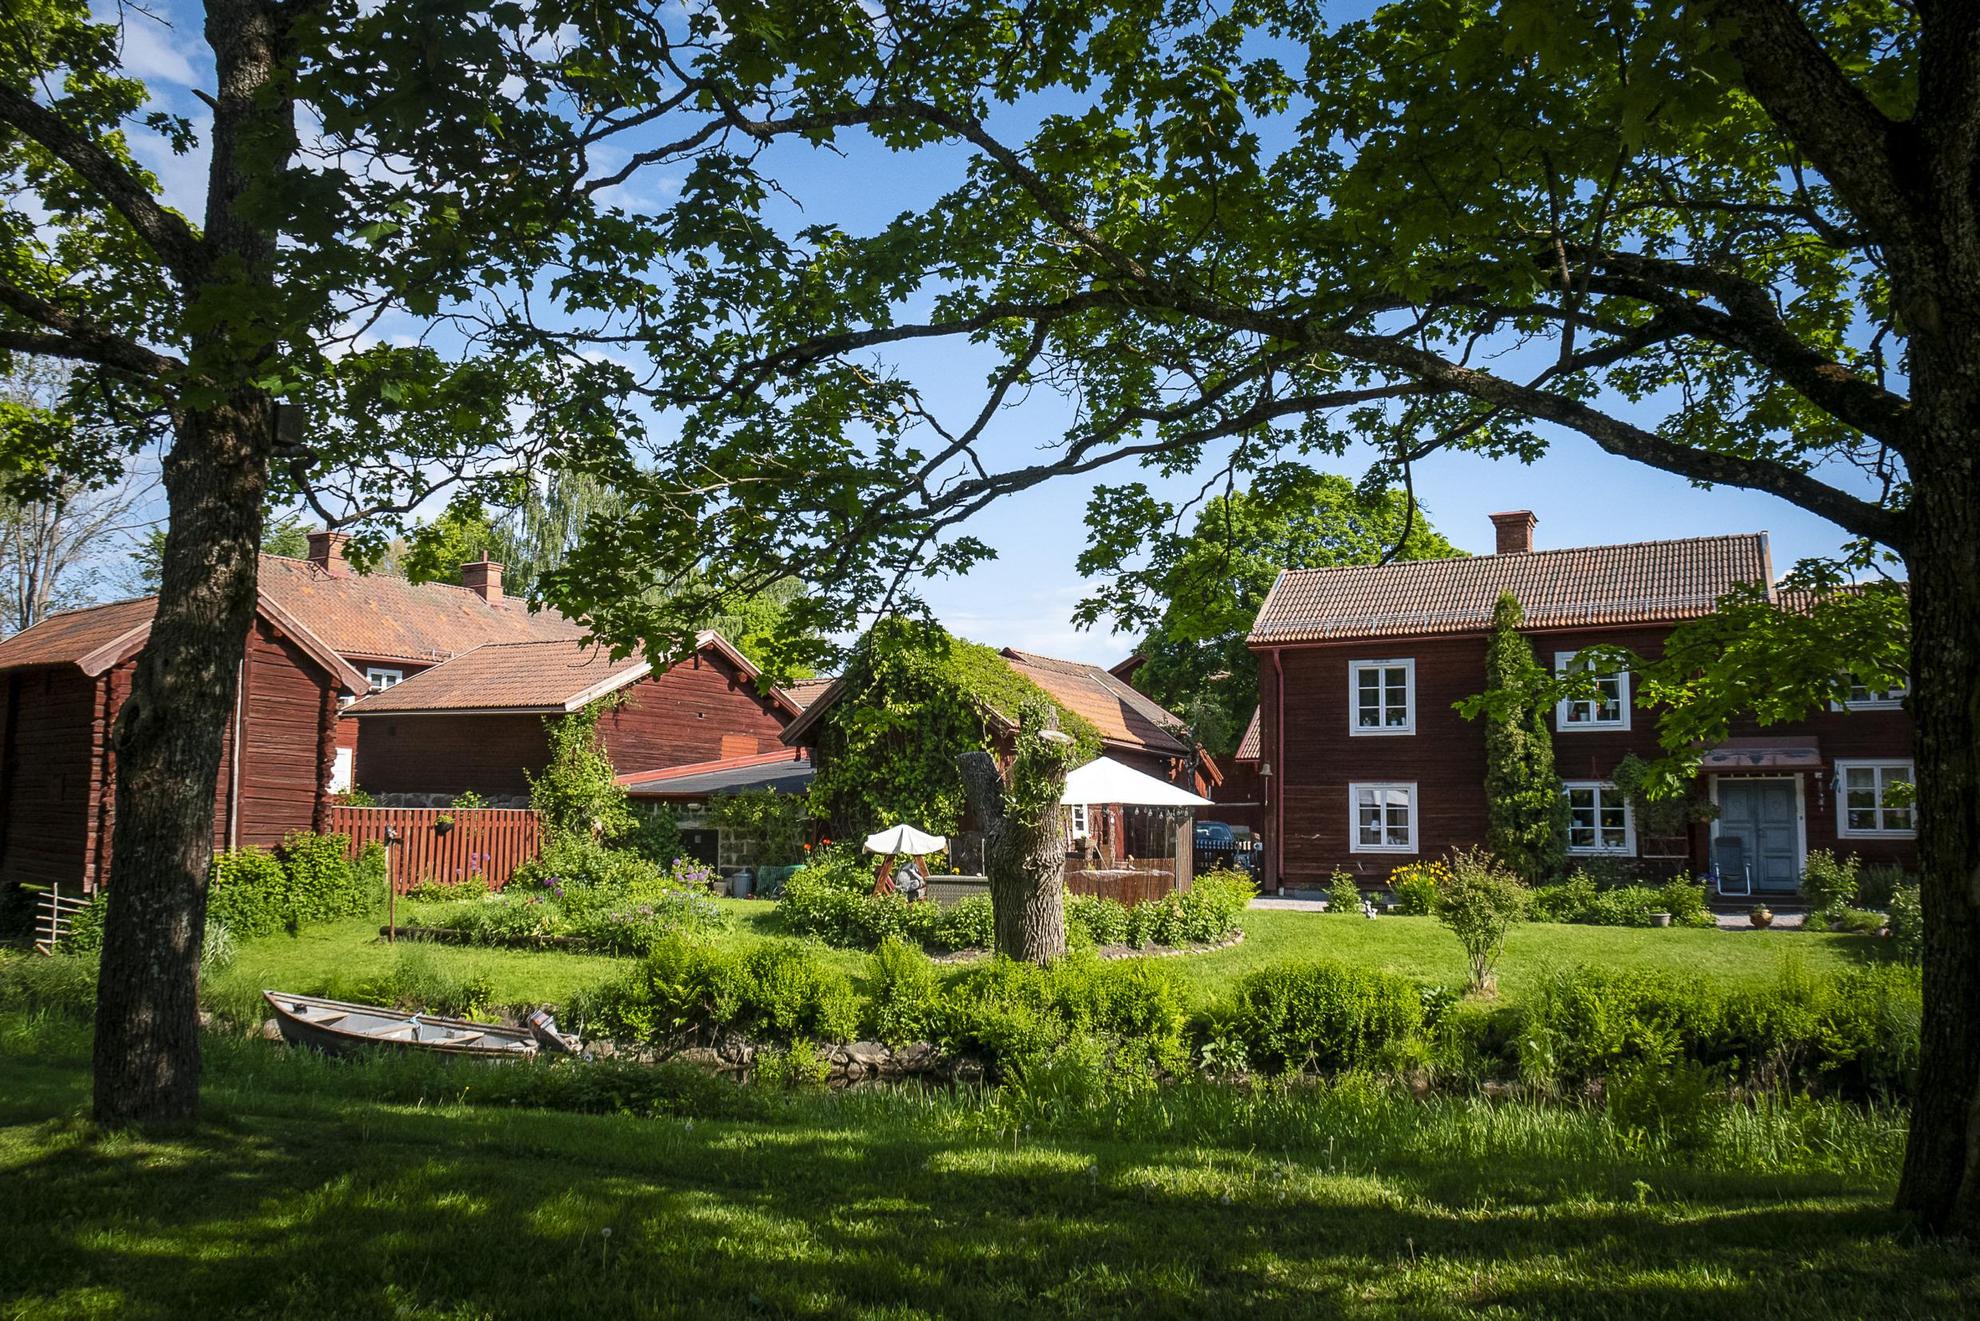 Verschillende traditionele huizen geschilderd met de beroemde verf Falu Rödfärg omgeven door groen.